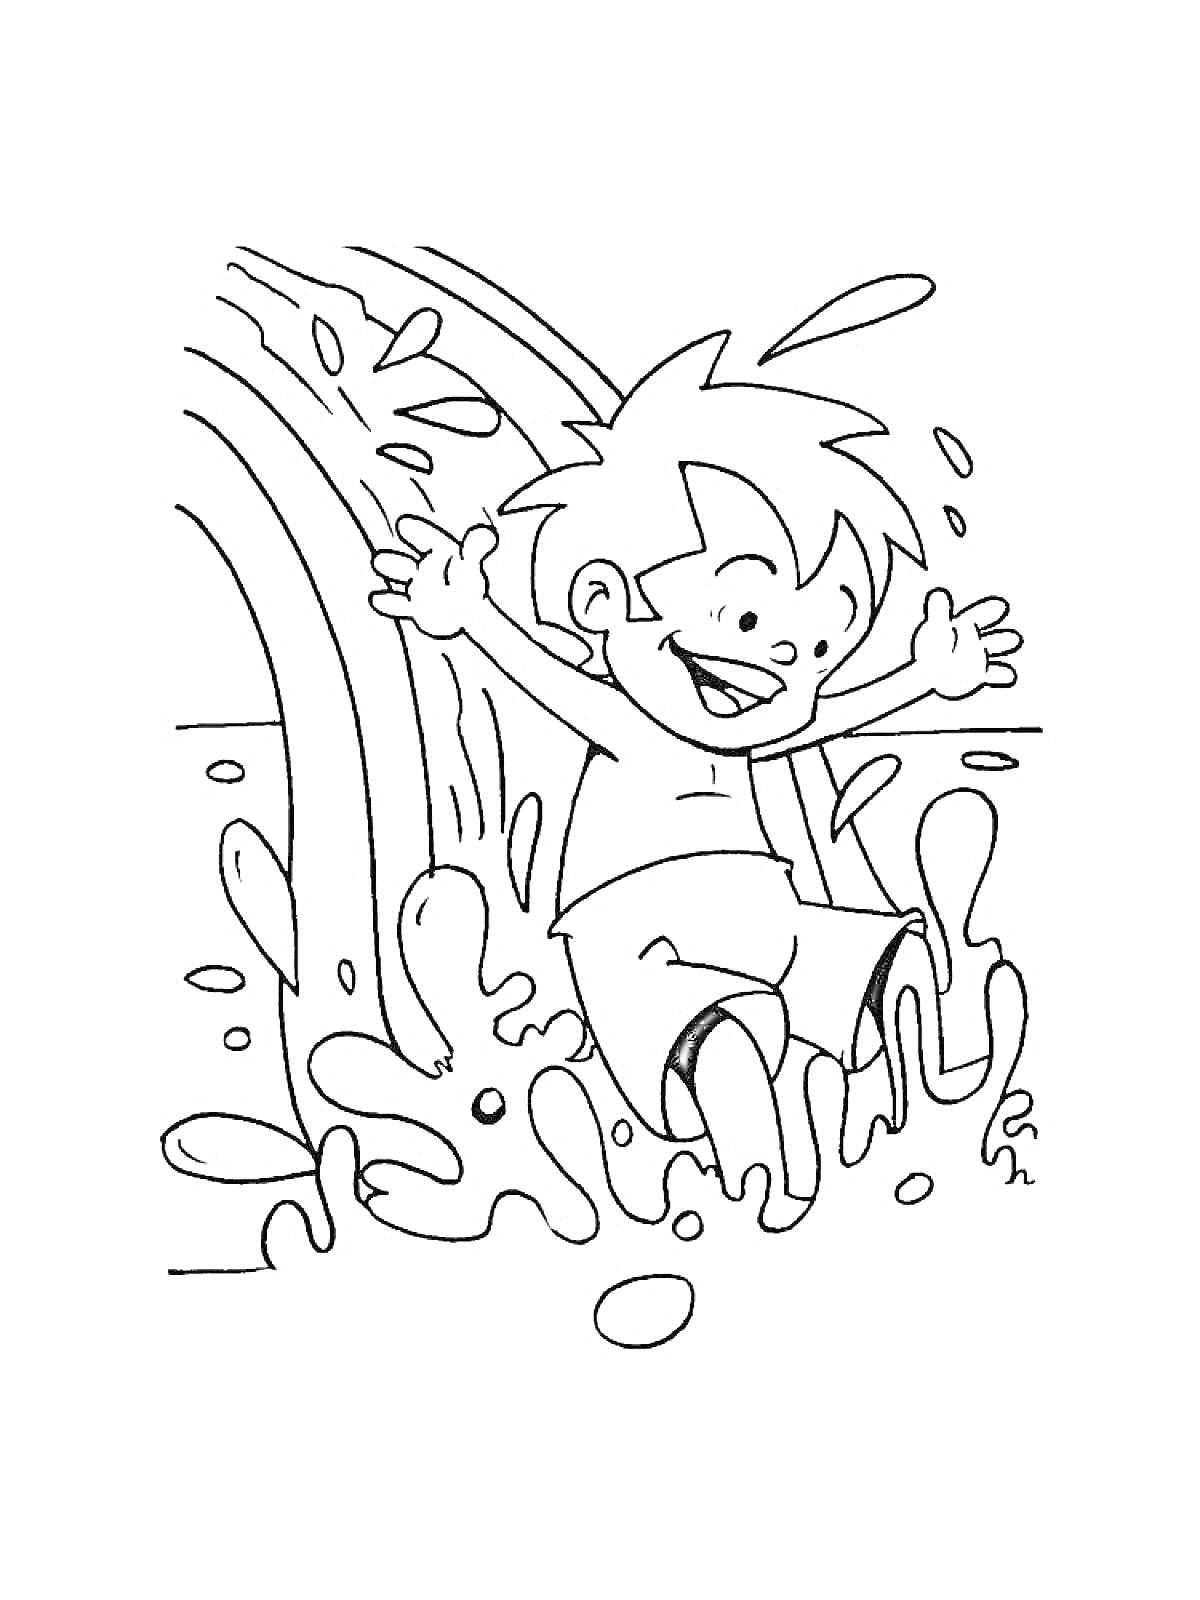 Мальчик катается на водной горке в аквапарке, брызги воды